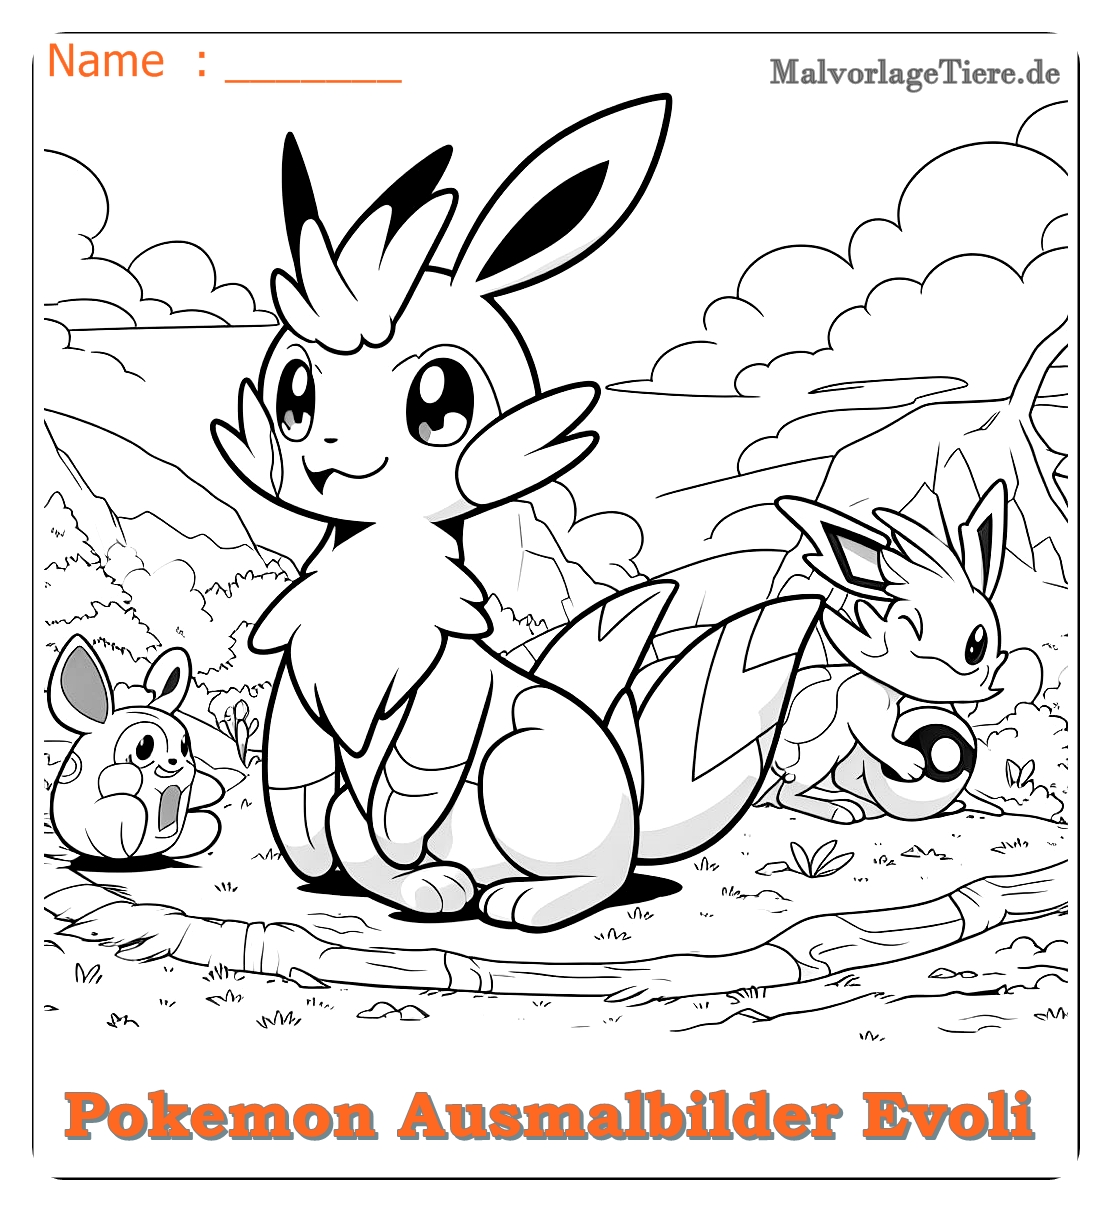 pokemon ausmalbilder evoli entwicklungen 05 by malvorlagetiere.de